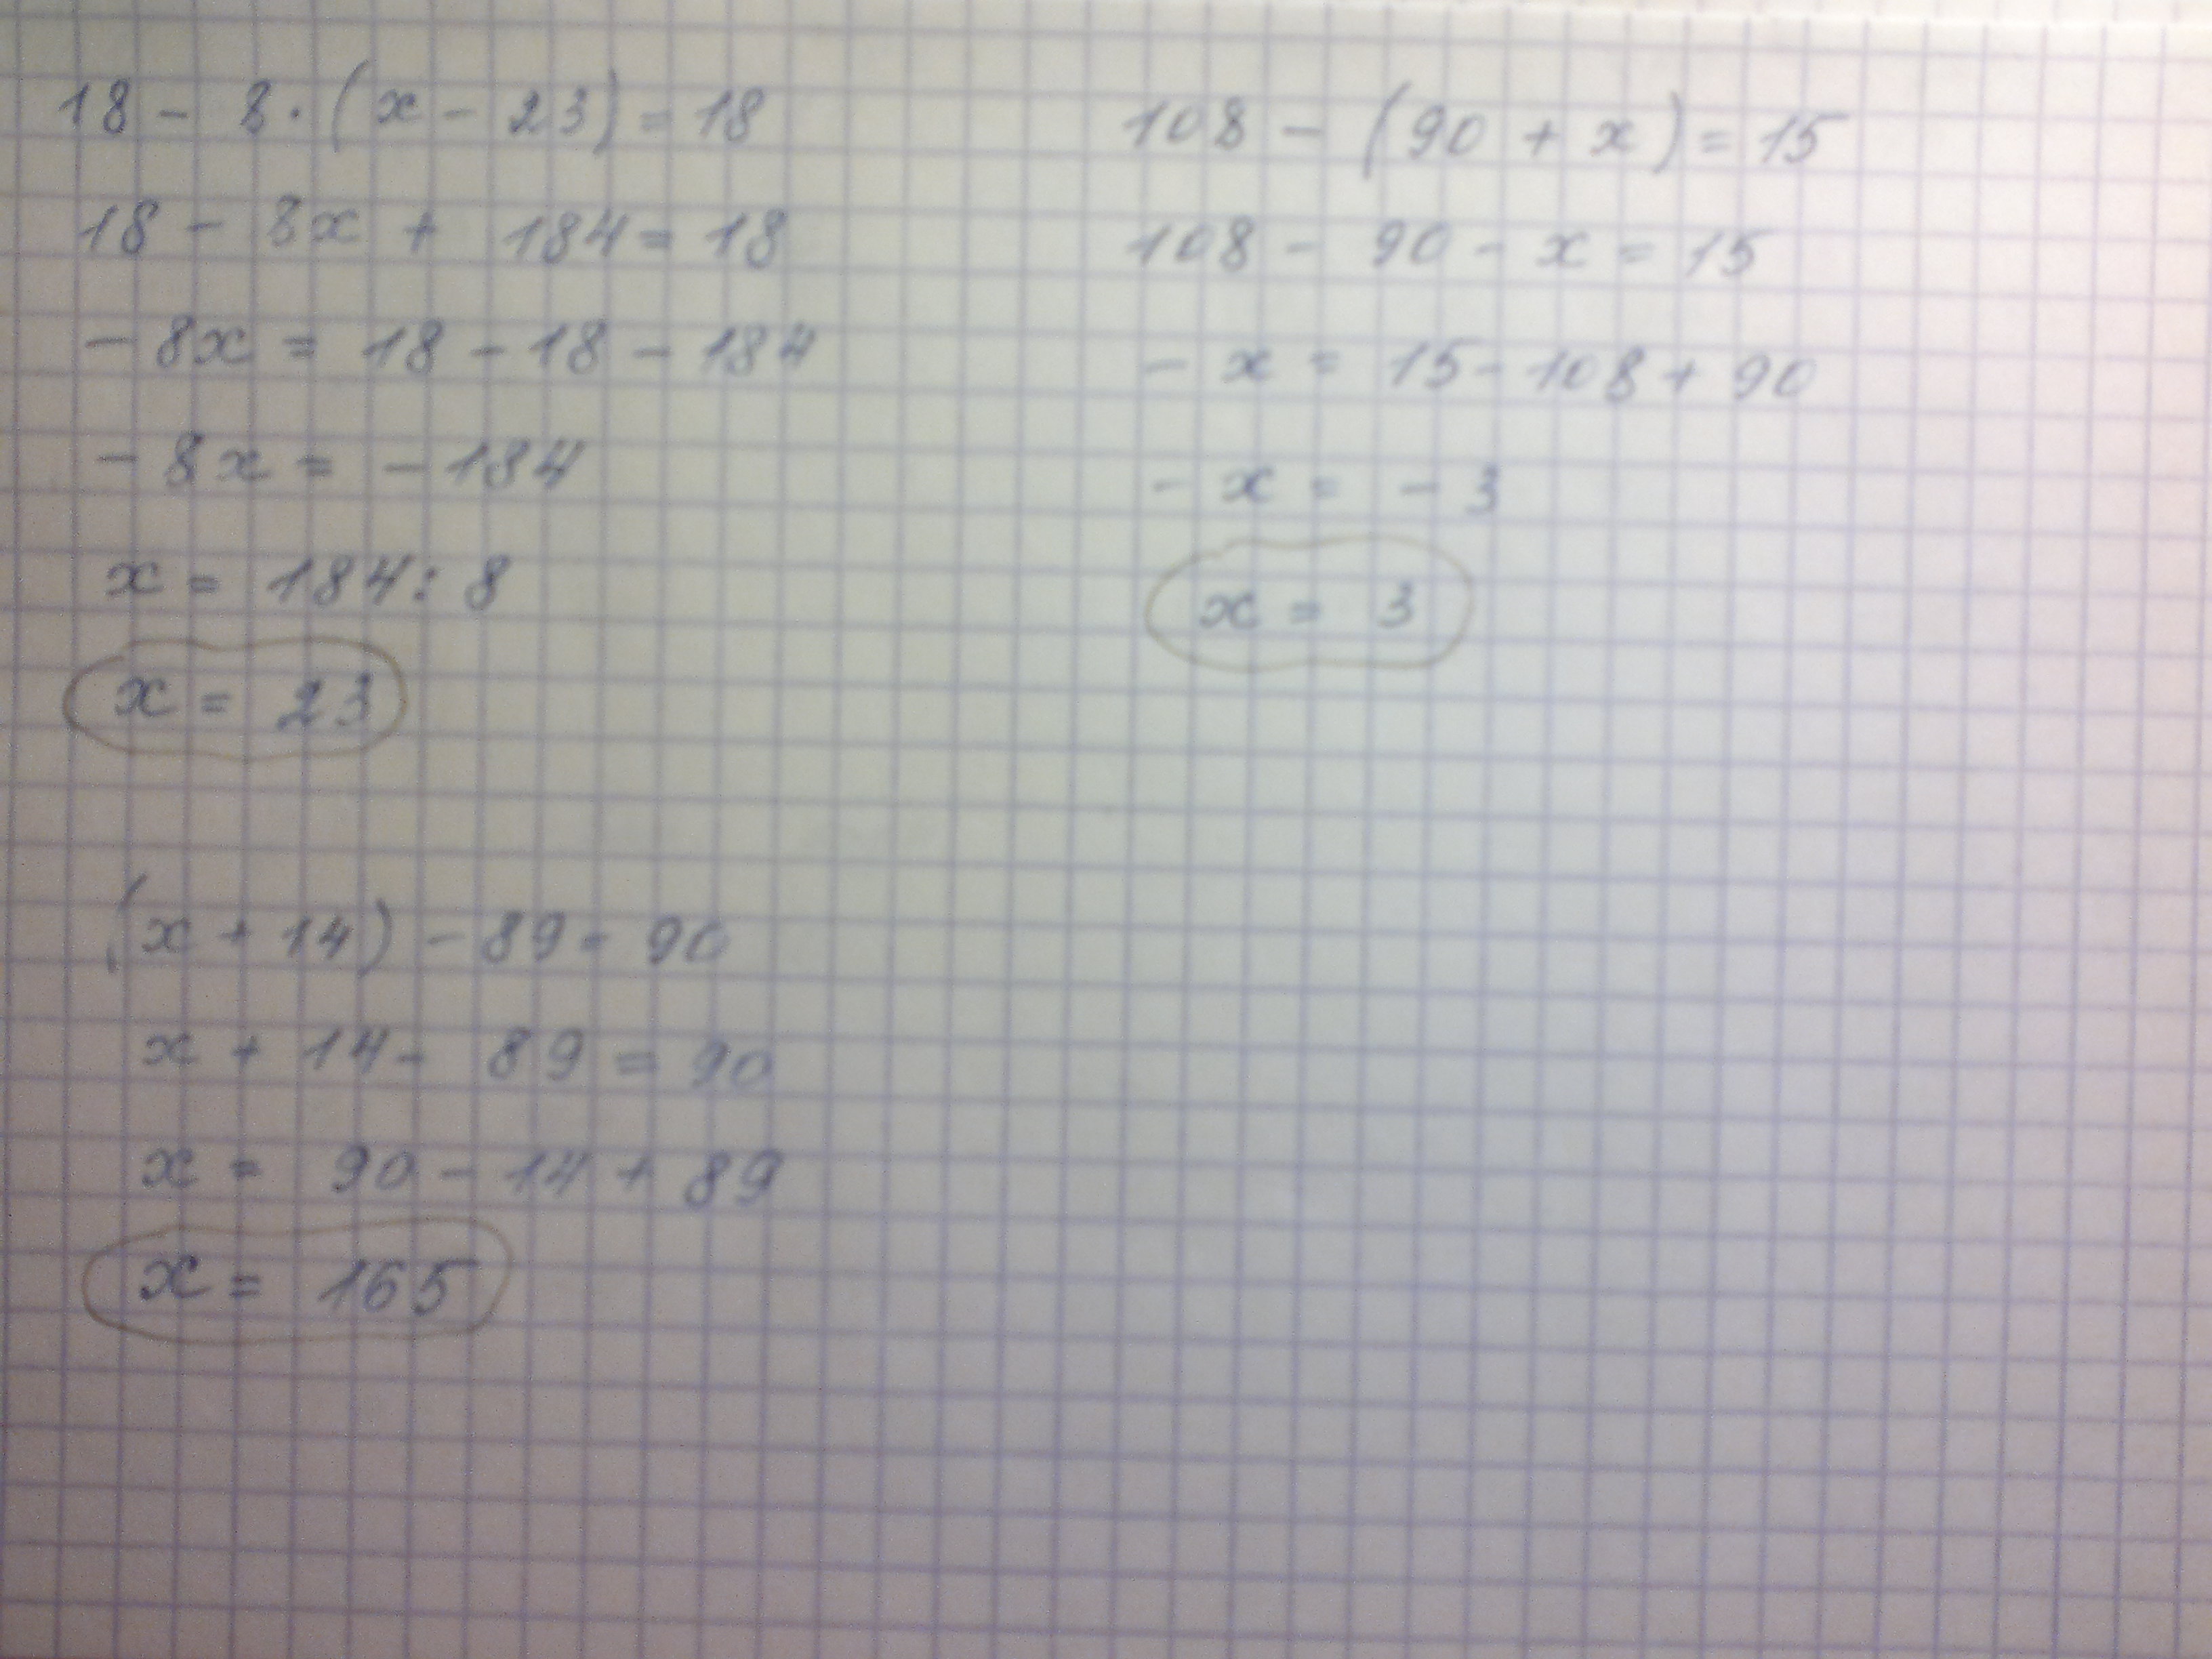 X 10 x 3 4x 23. 14х 8х 18 решение. 90 15 Решение. 108-(90+X)=15. (90-Х) = 18 решение.